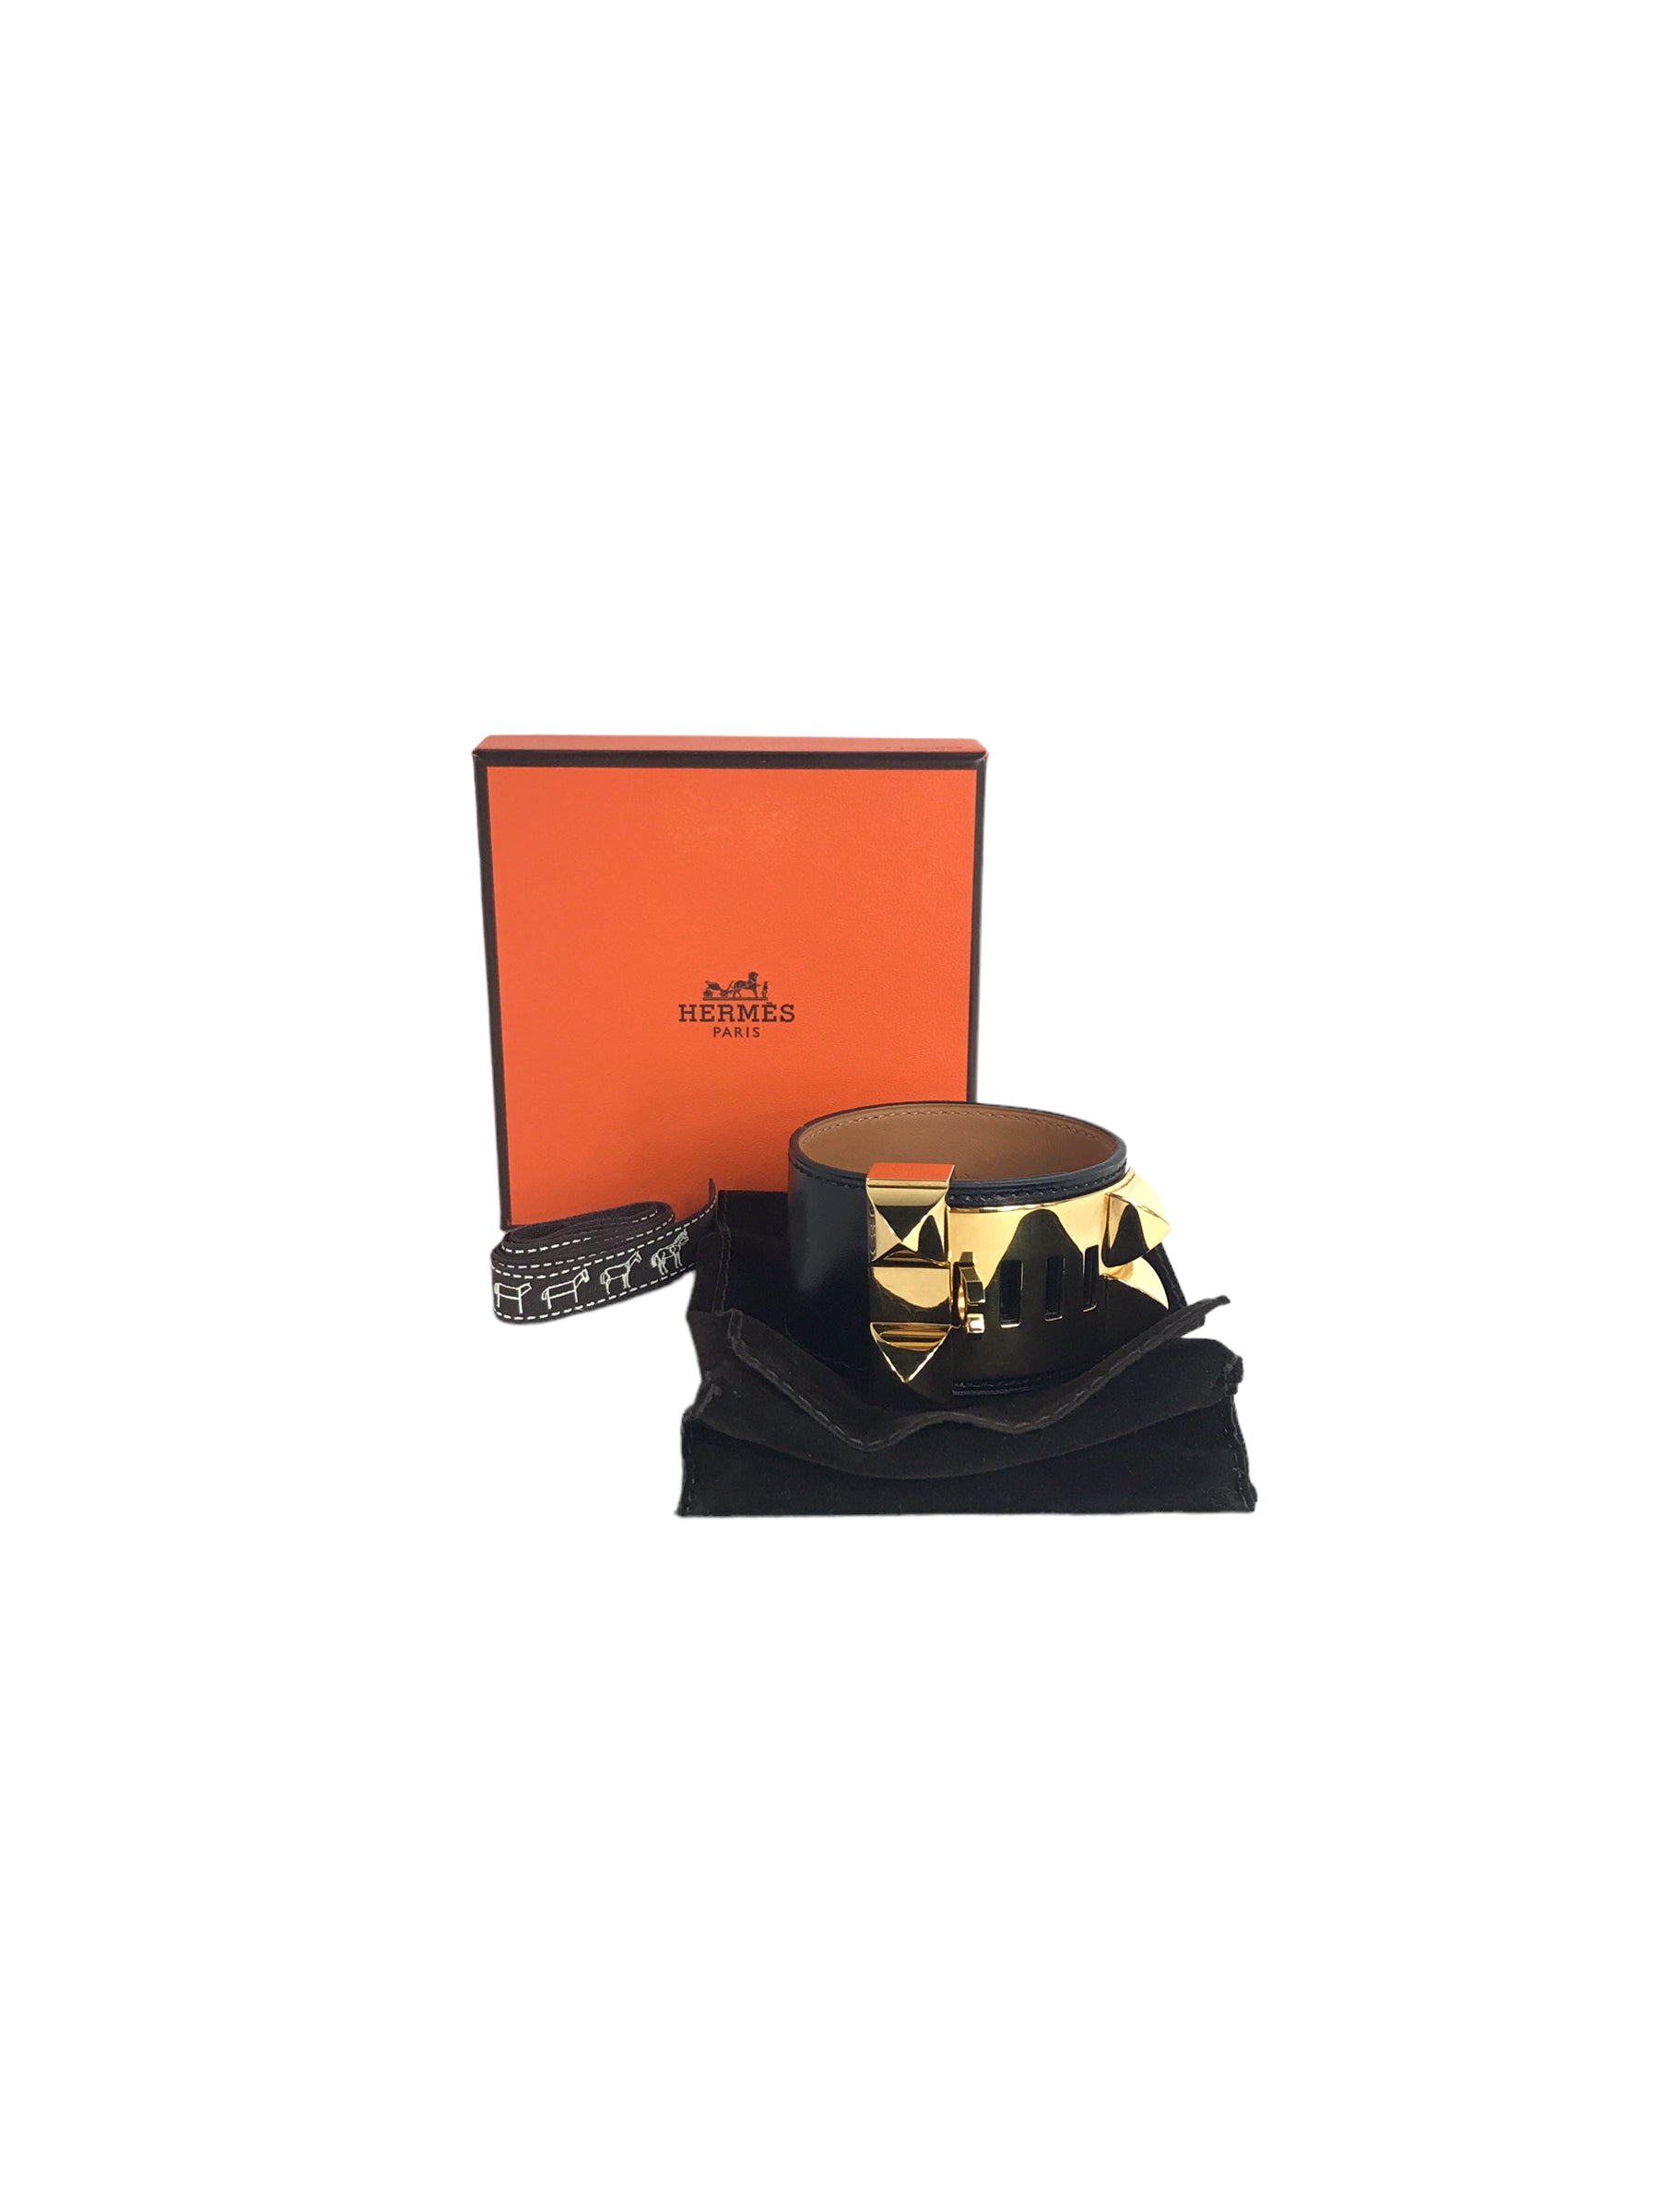 Black Box Calf Leather Collier De Chien Bracelet W/GHW